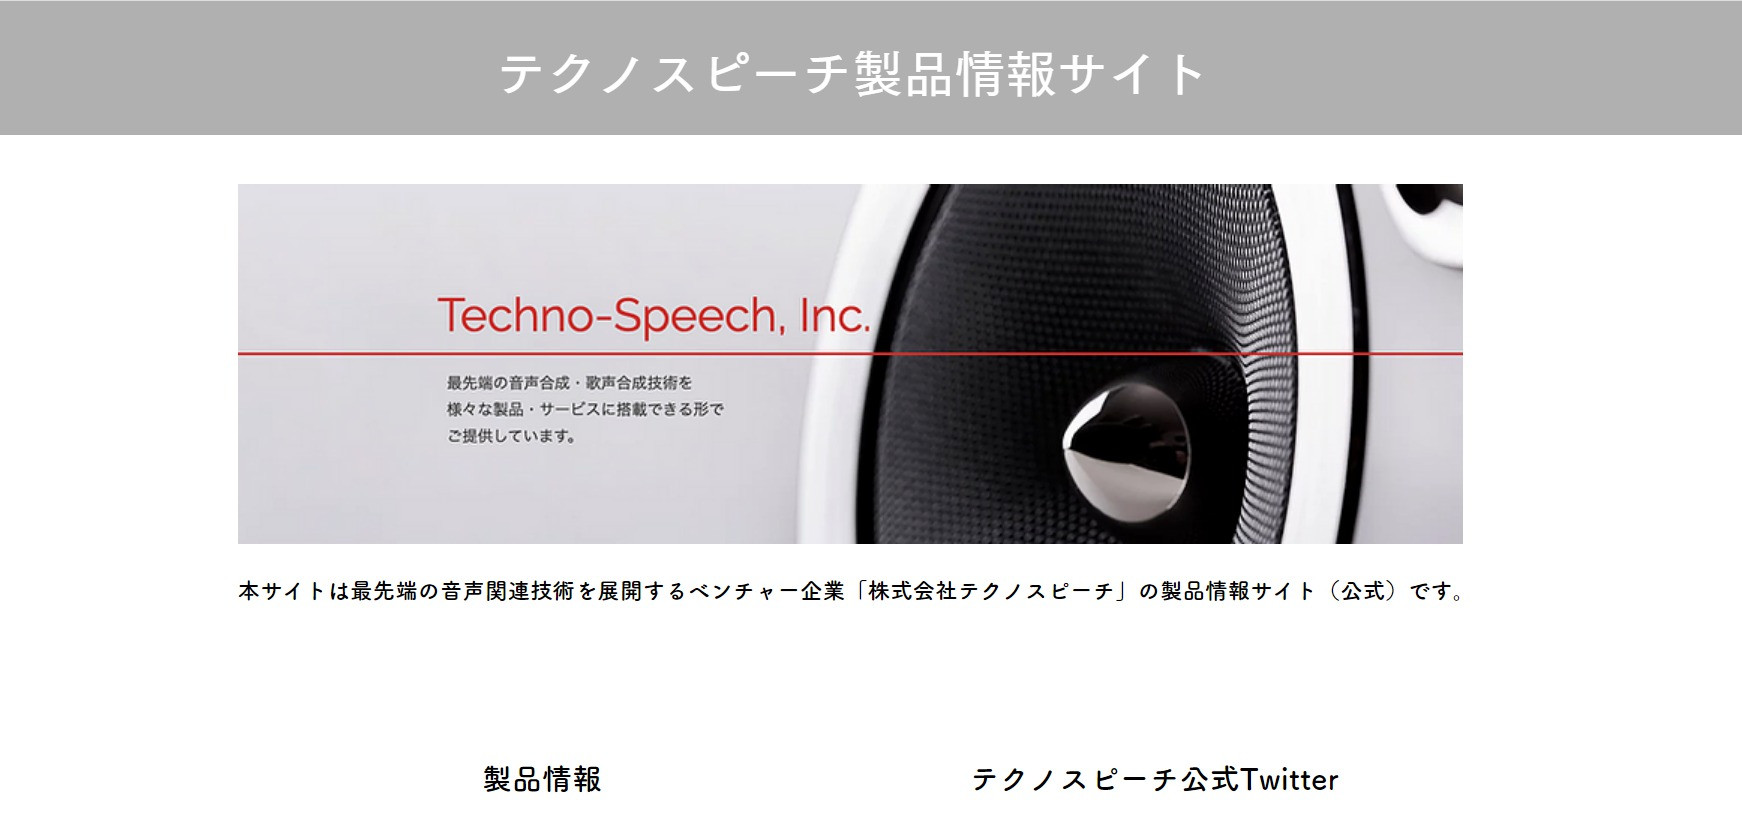 www.techno-speech-products.com